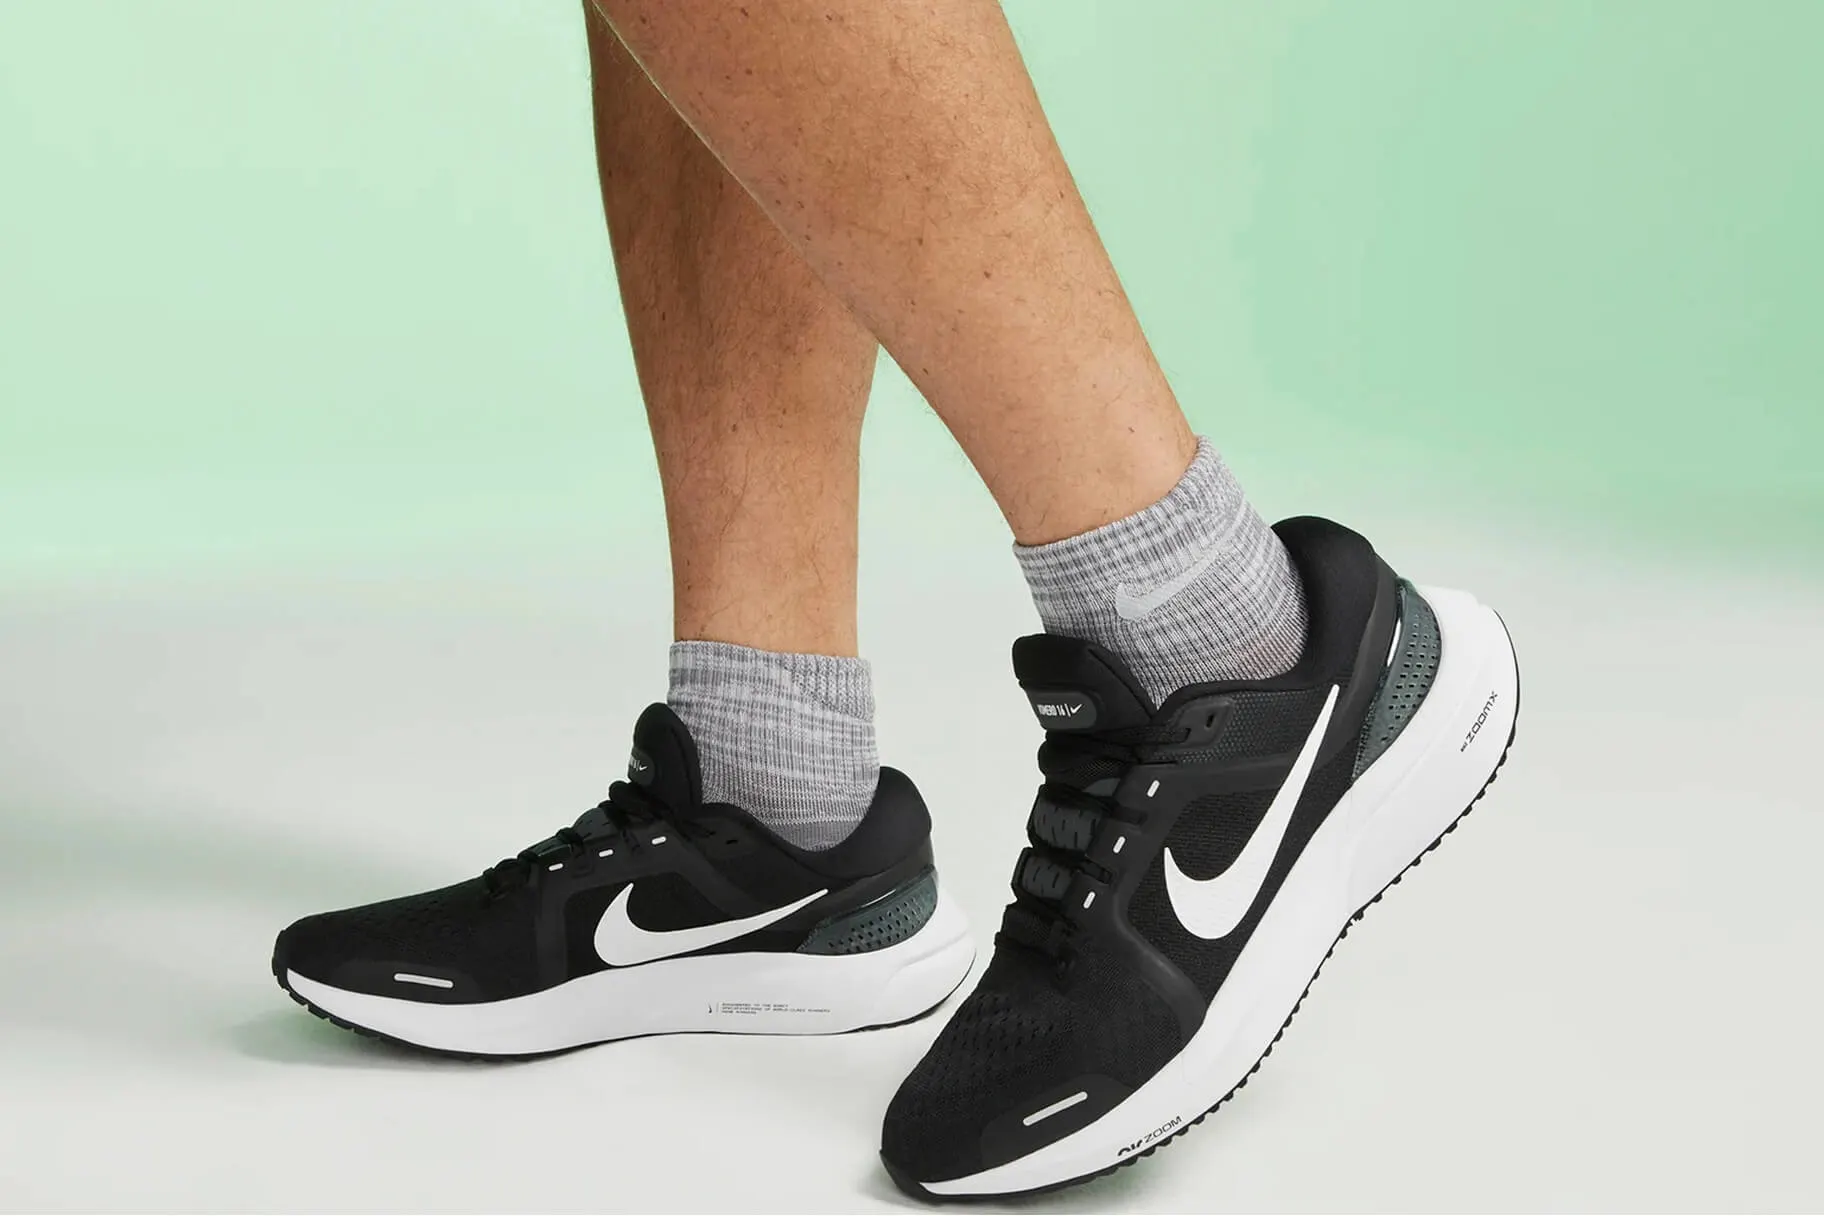 Best Nike Walking Shoes